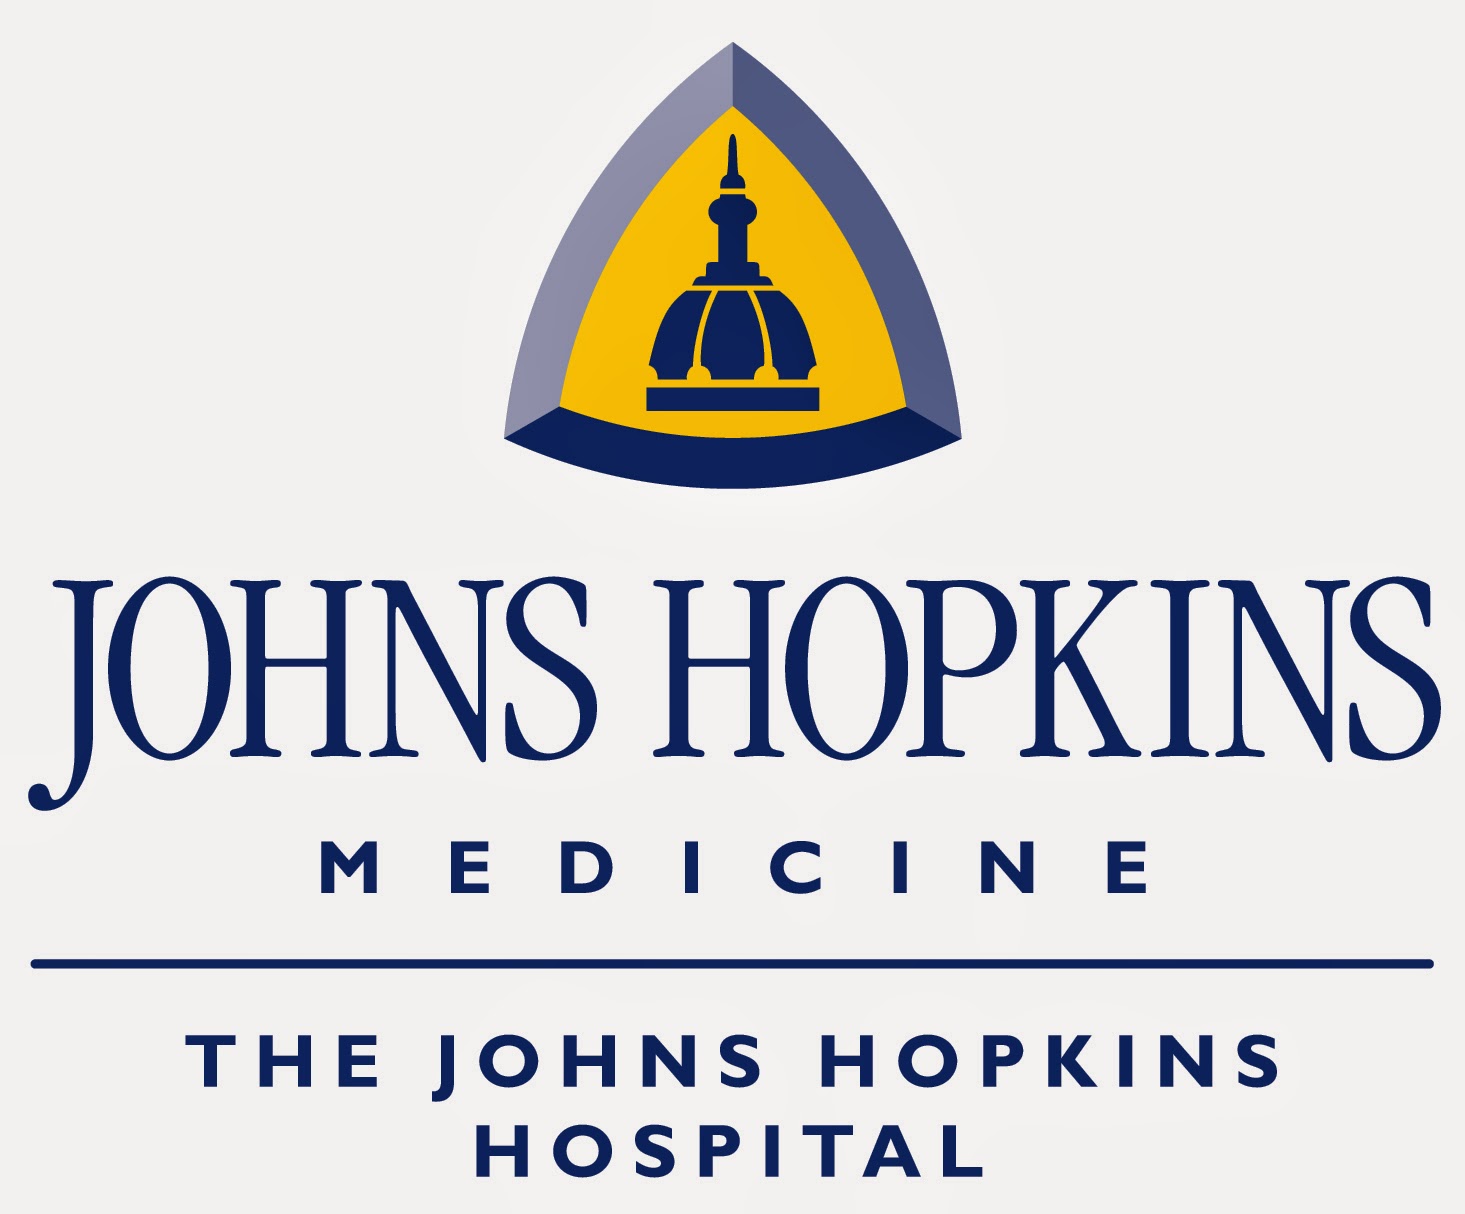 Johns Hopkins